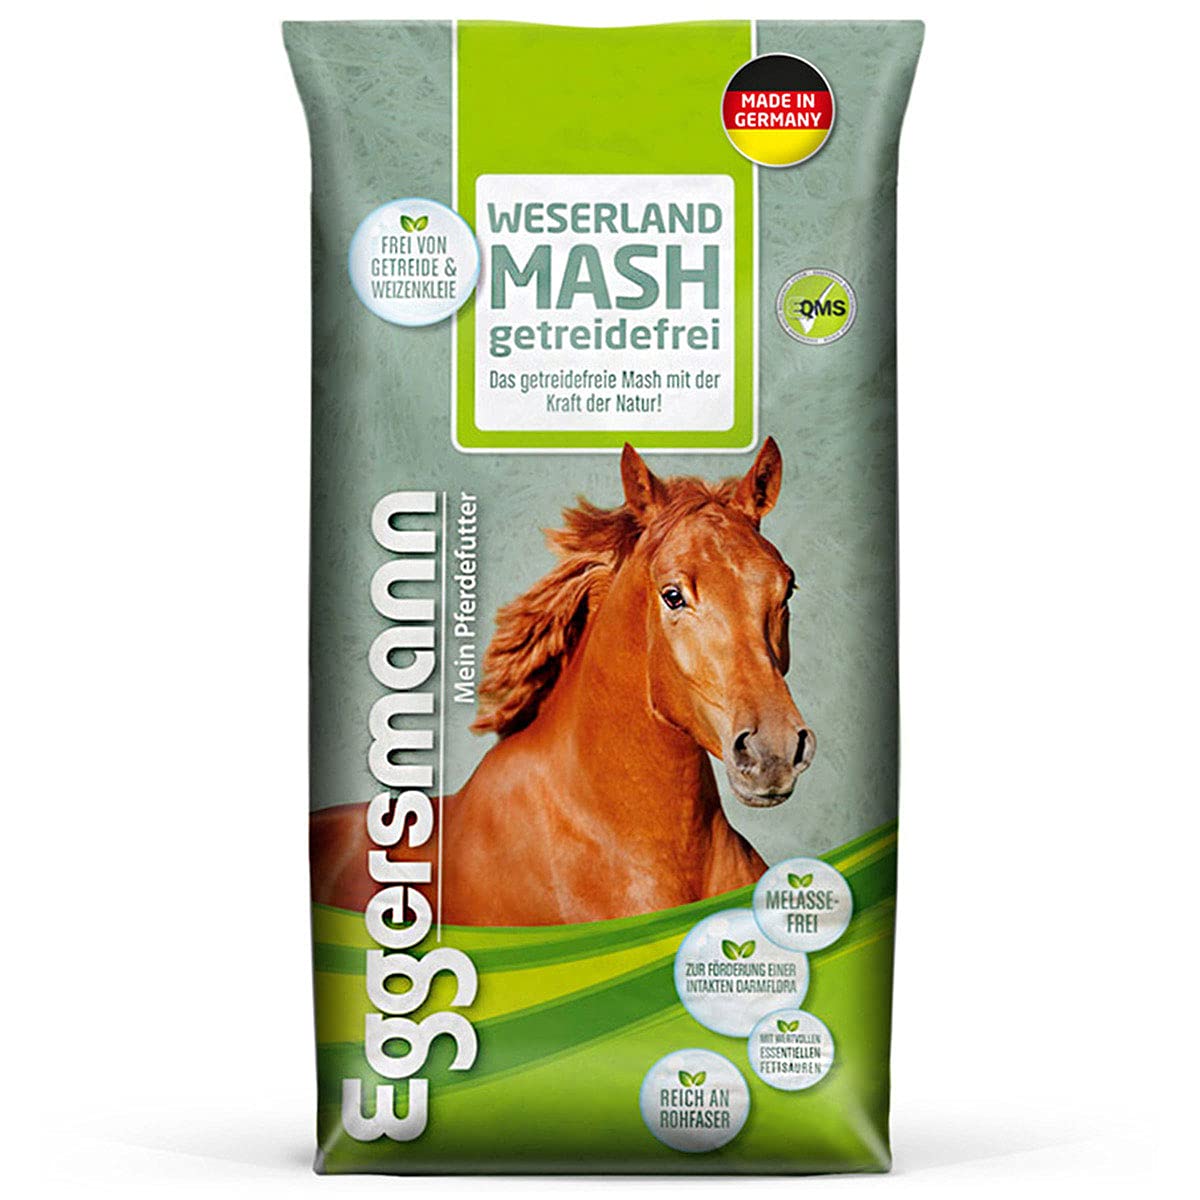 Eggersmann Weserland Mash getreidefrei – Verdauungsförderndes Pferdefutter frei von Melasse, Getreide und Weizenkleie – 15 kg Sack